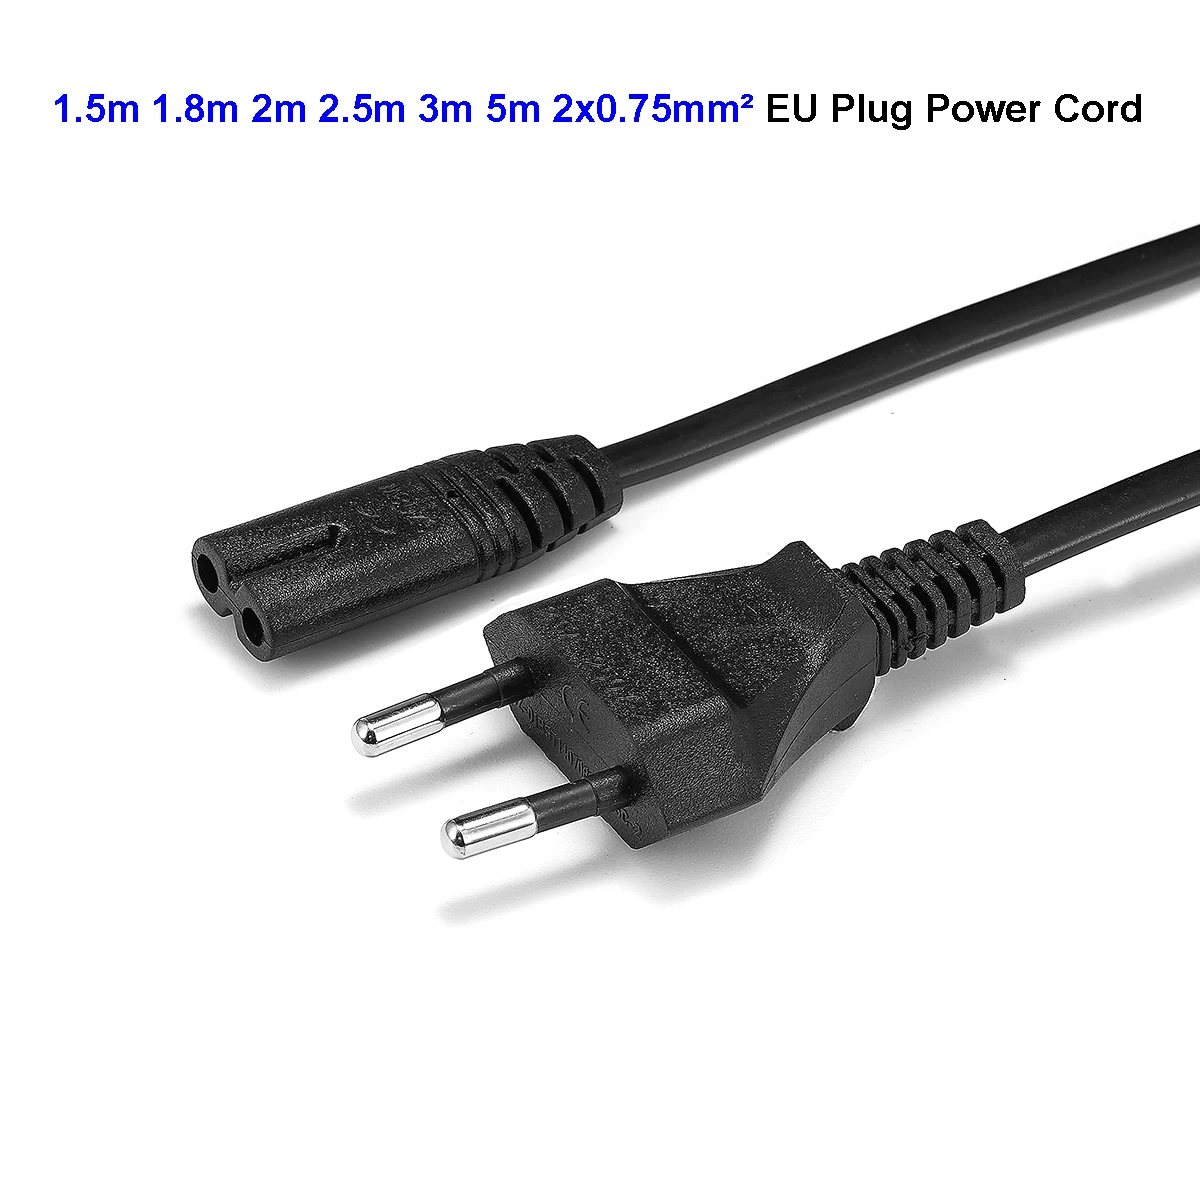 ЕС Япония IEC C7 кабель питания Великобритания ЕВРО AU ЕС Рисунок 8 удлинитель питания для питания портативное радио sony psp 3 4 принтера